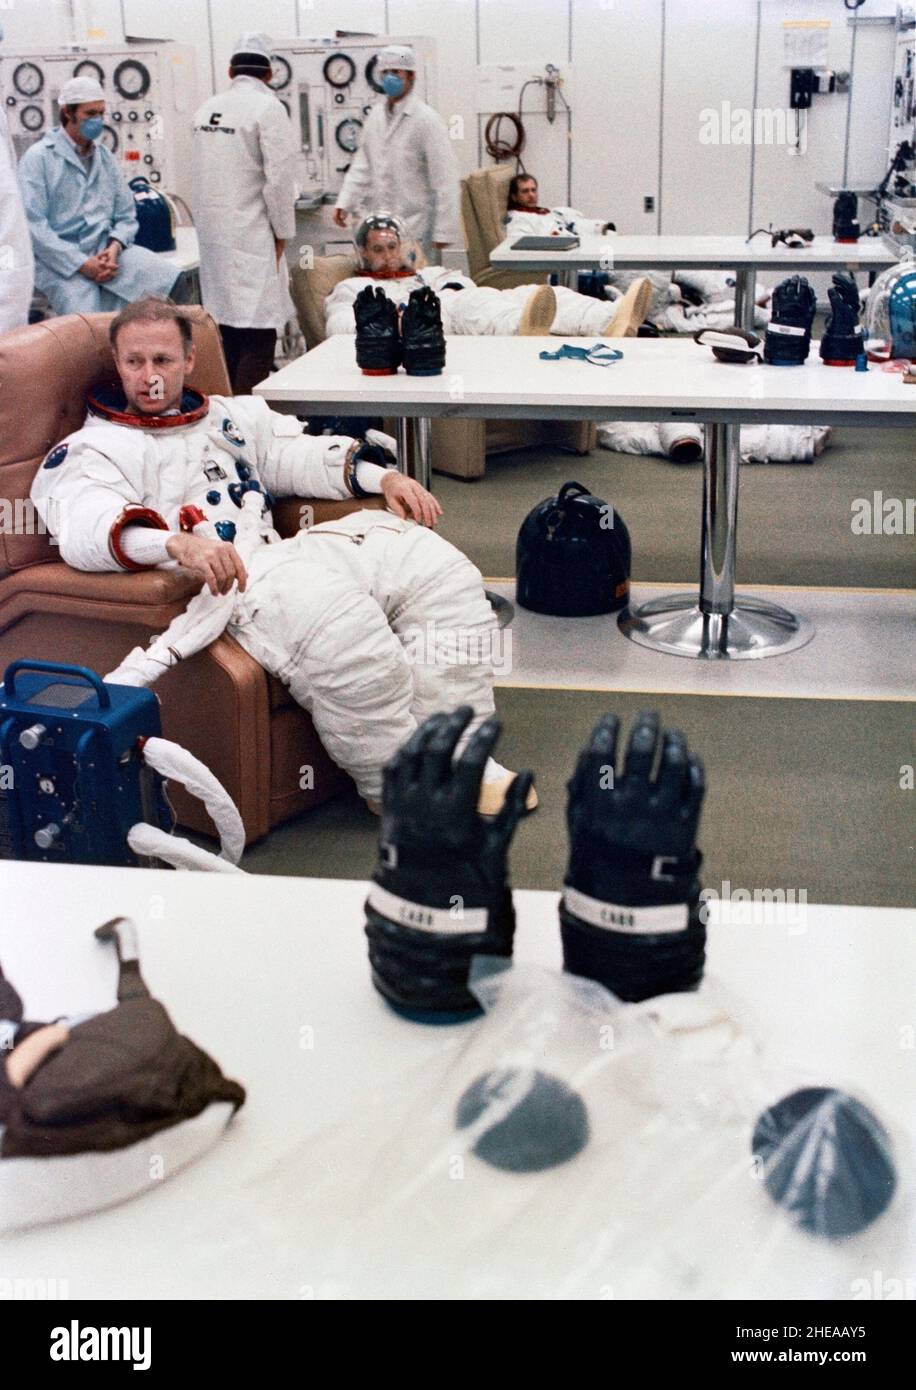 (8. November 1973) --- die drei Mitglieder der Skylab 4-Crew werden während der Flugvorkontrolle im Kennedy Space Center, Florida, im passenden Gebäude einer Raumanpassung und einer Druckprüfung unterzogen. Sie sind Astronaut Gerald P. Carr (Vordergrund), Kommandant; Wissenschaftler-Astronaut Edward G. Gibson (Mitte), Wissenschaftspilot; und Astronaut William R. Pogue (Hintergrund), Pilot. Skylab 4, der dritte und letzte Besuch der Skylab-Raumstation in der Erdumlaufbahn, wird zusätzliche Informationen über Erde und Sonne liefern sowie einen günstigen Ort bieten, um den kürzlich entdeckten Kometen Kohoutek zu beobachten Stockfoto